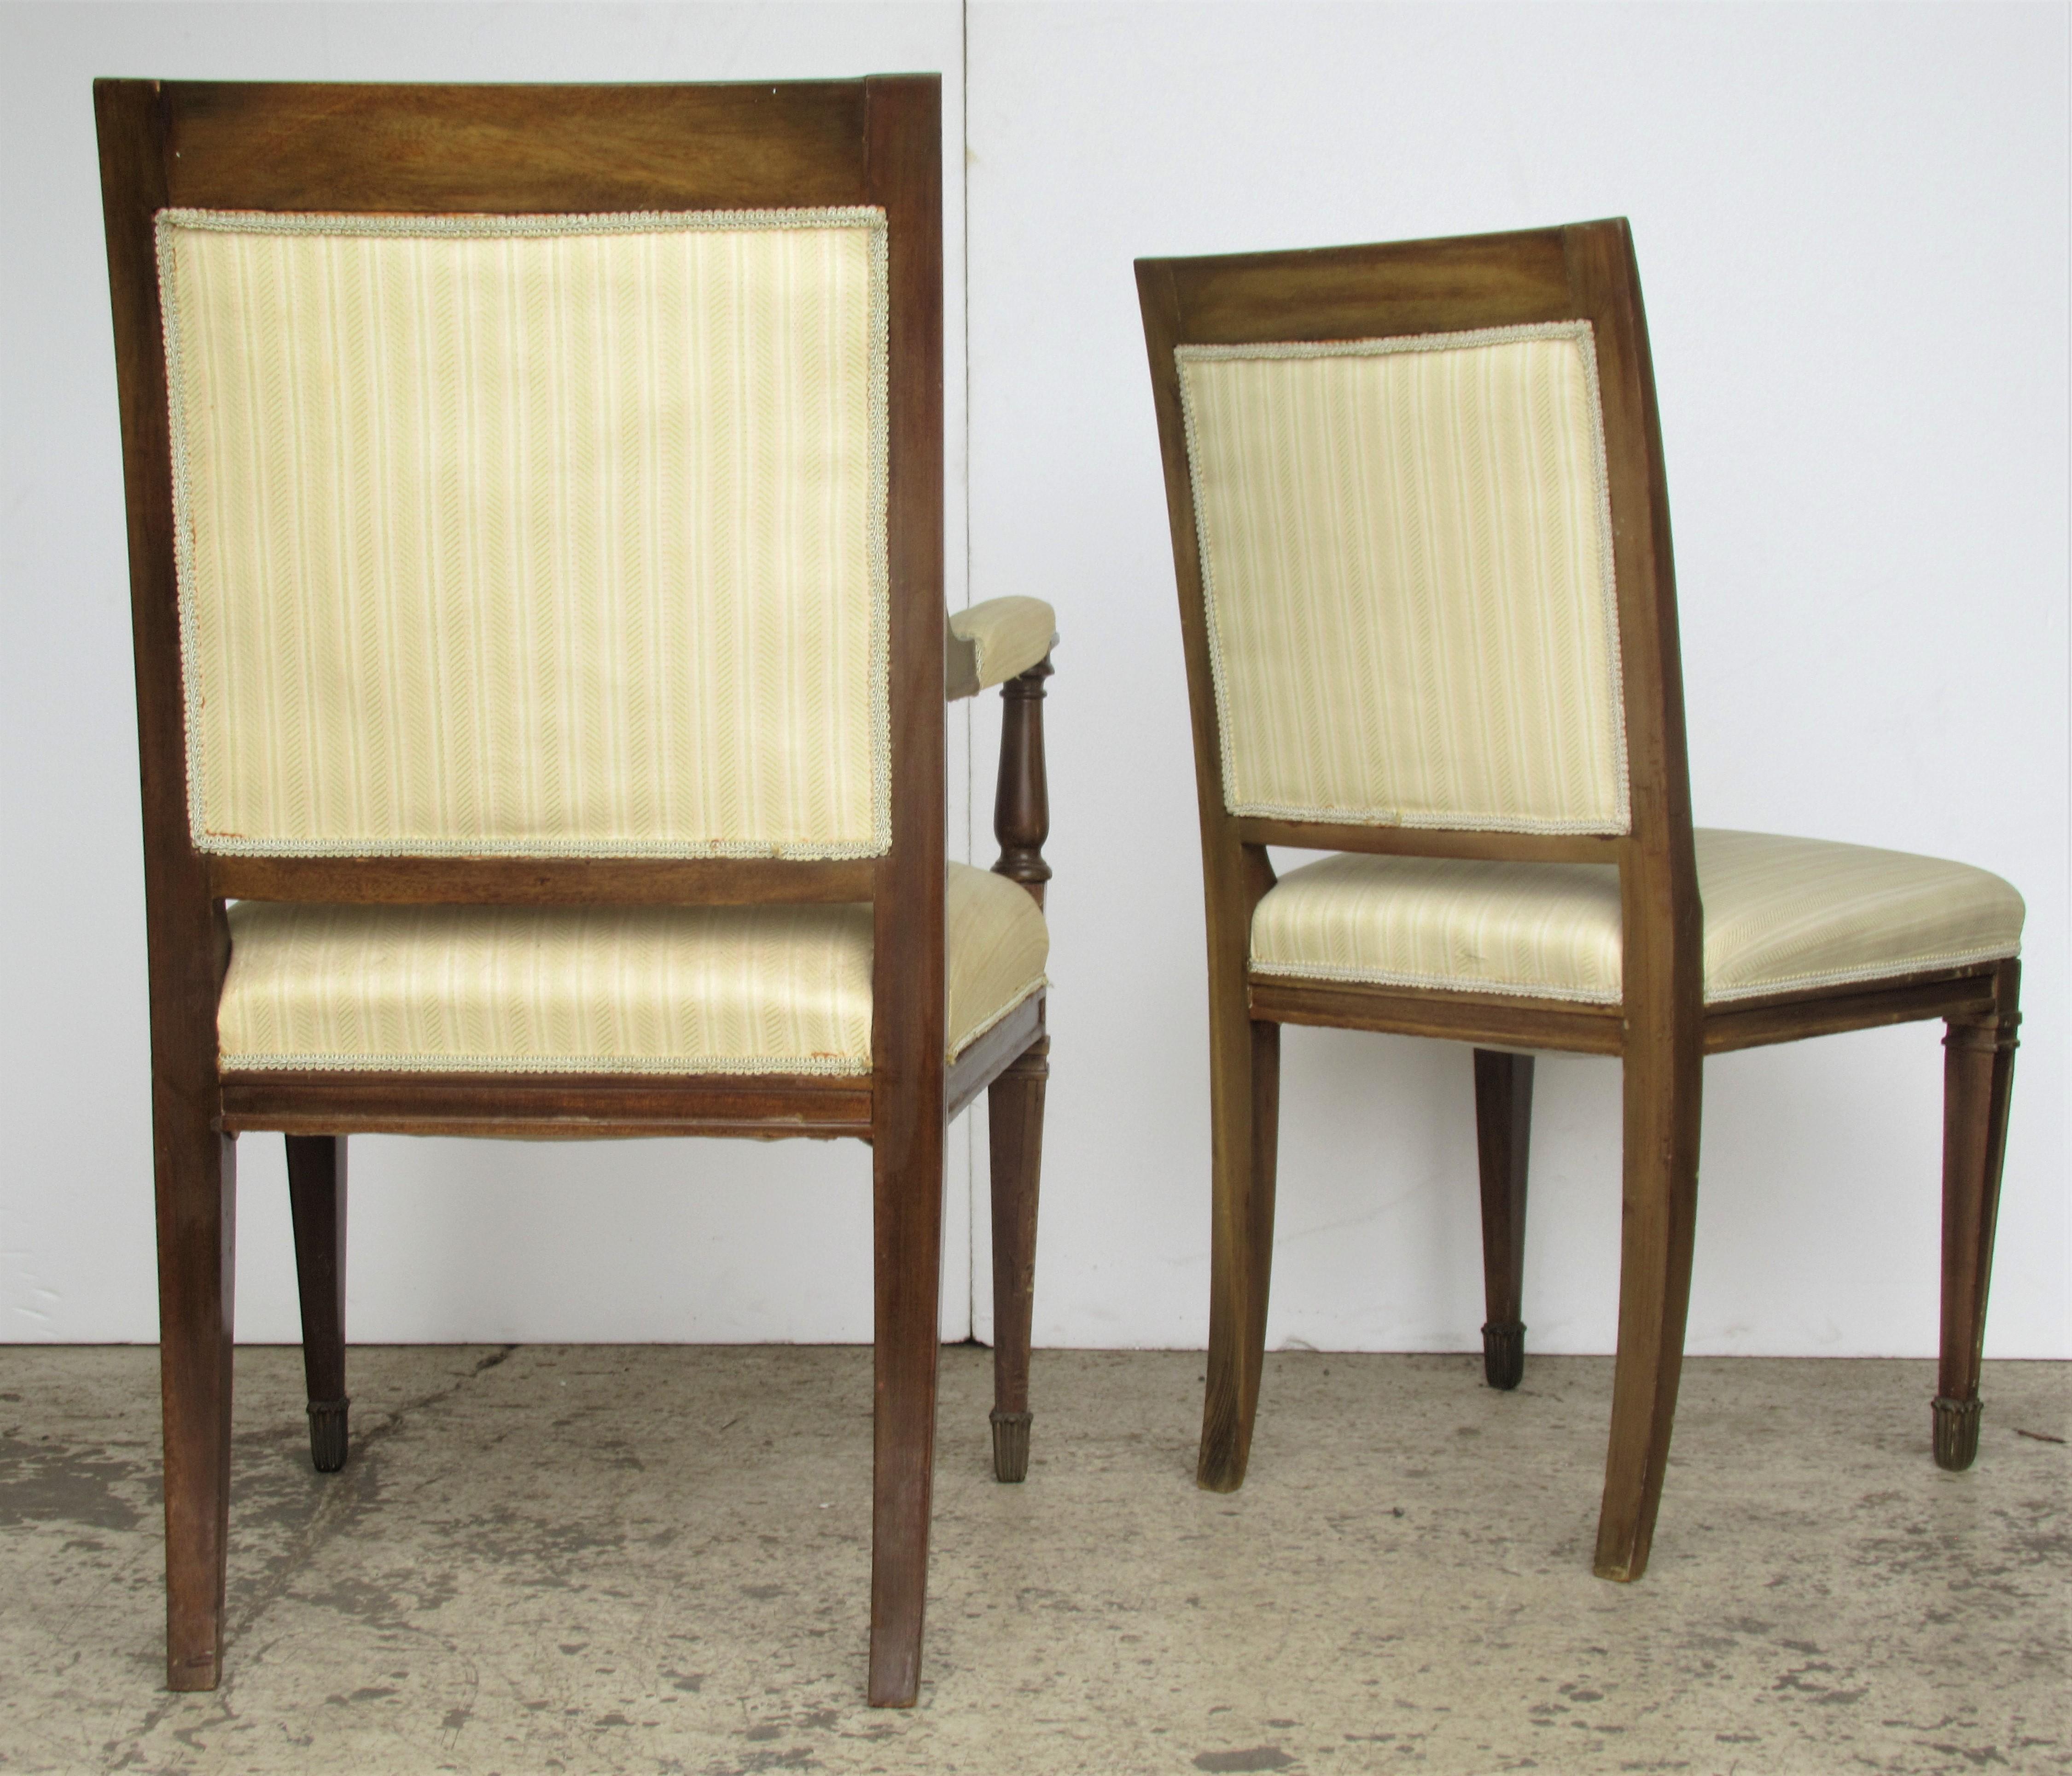 Ein Satz von zehn Stühlen im französischen Empire-Stil mit feinen Details aus Messingmetall  Ormolu-Beschläge an den Rückseiten, Beinen und Füßen - die Holzrahmen mit gealterter Originallackierung . Es gibt zwei Sessel und acht Beistellstühle.